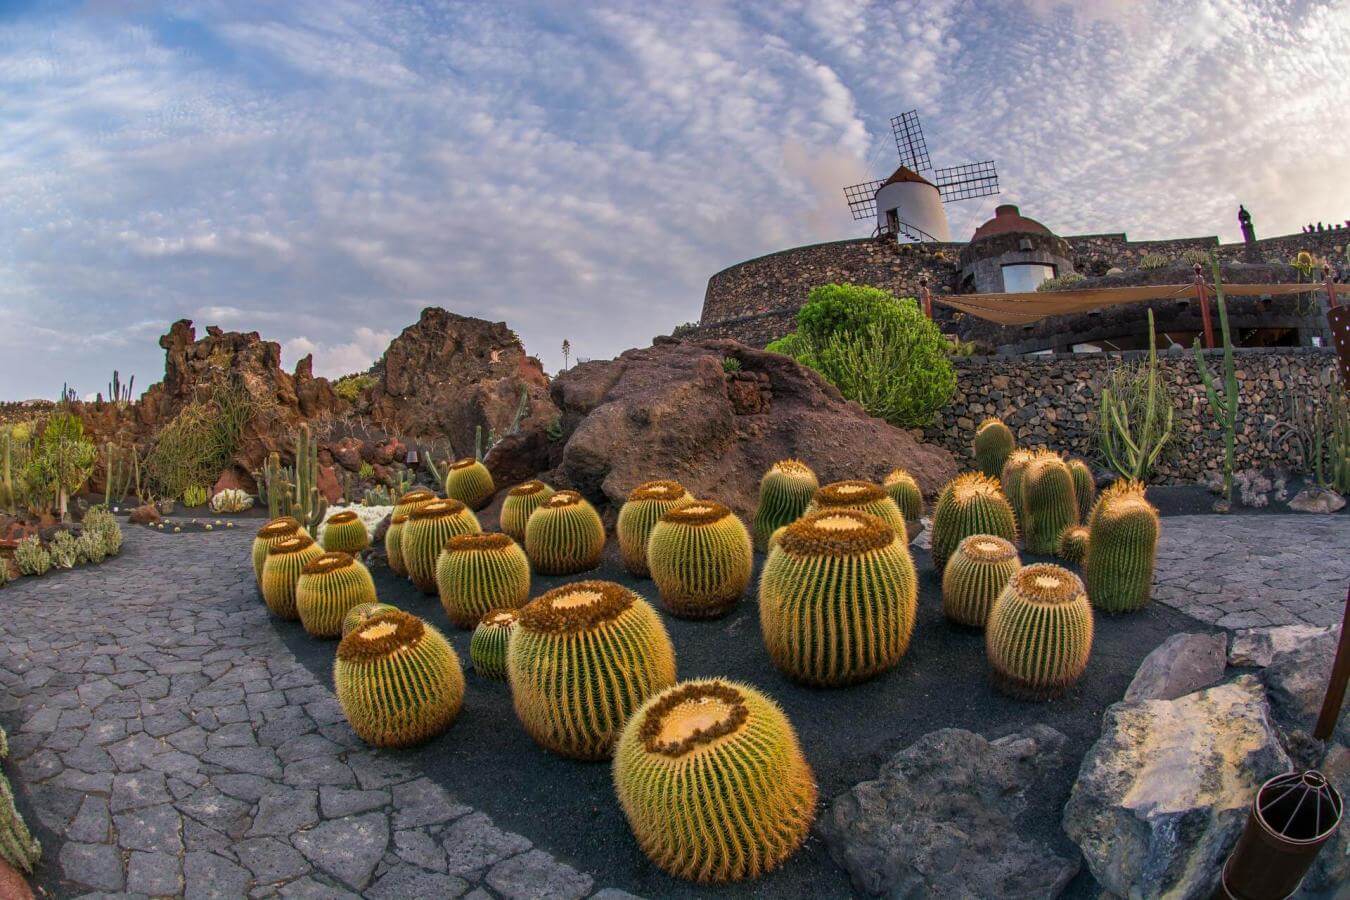 Excursión al Jardín de Cactus, Mirador del Río y Jameos del Agua - galeria3